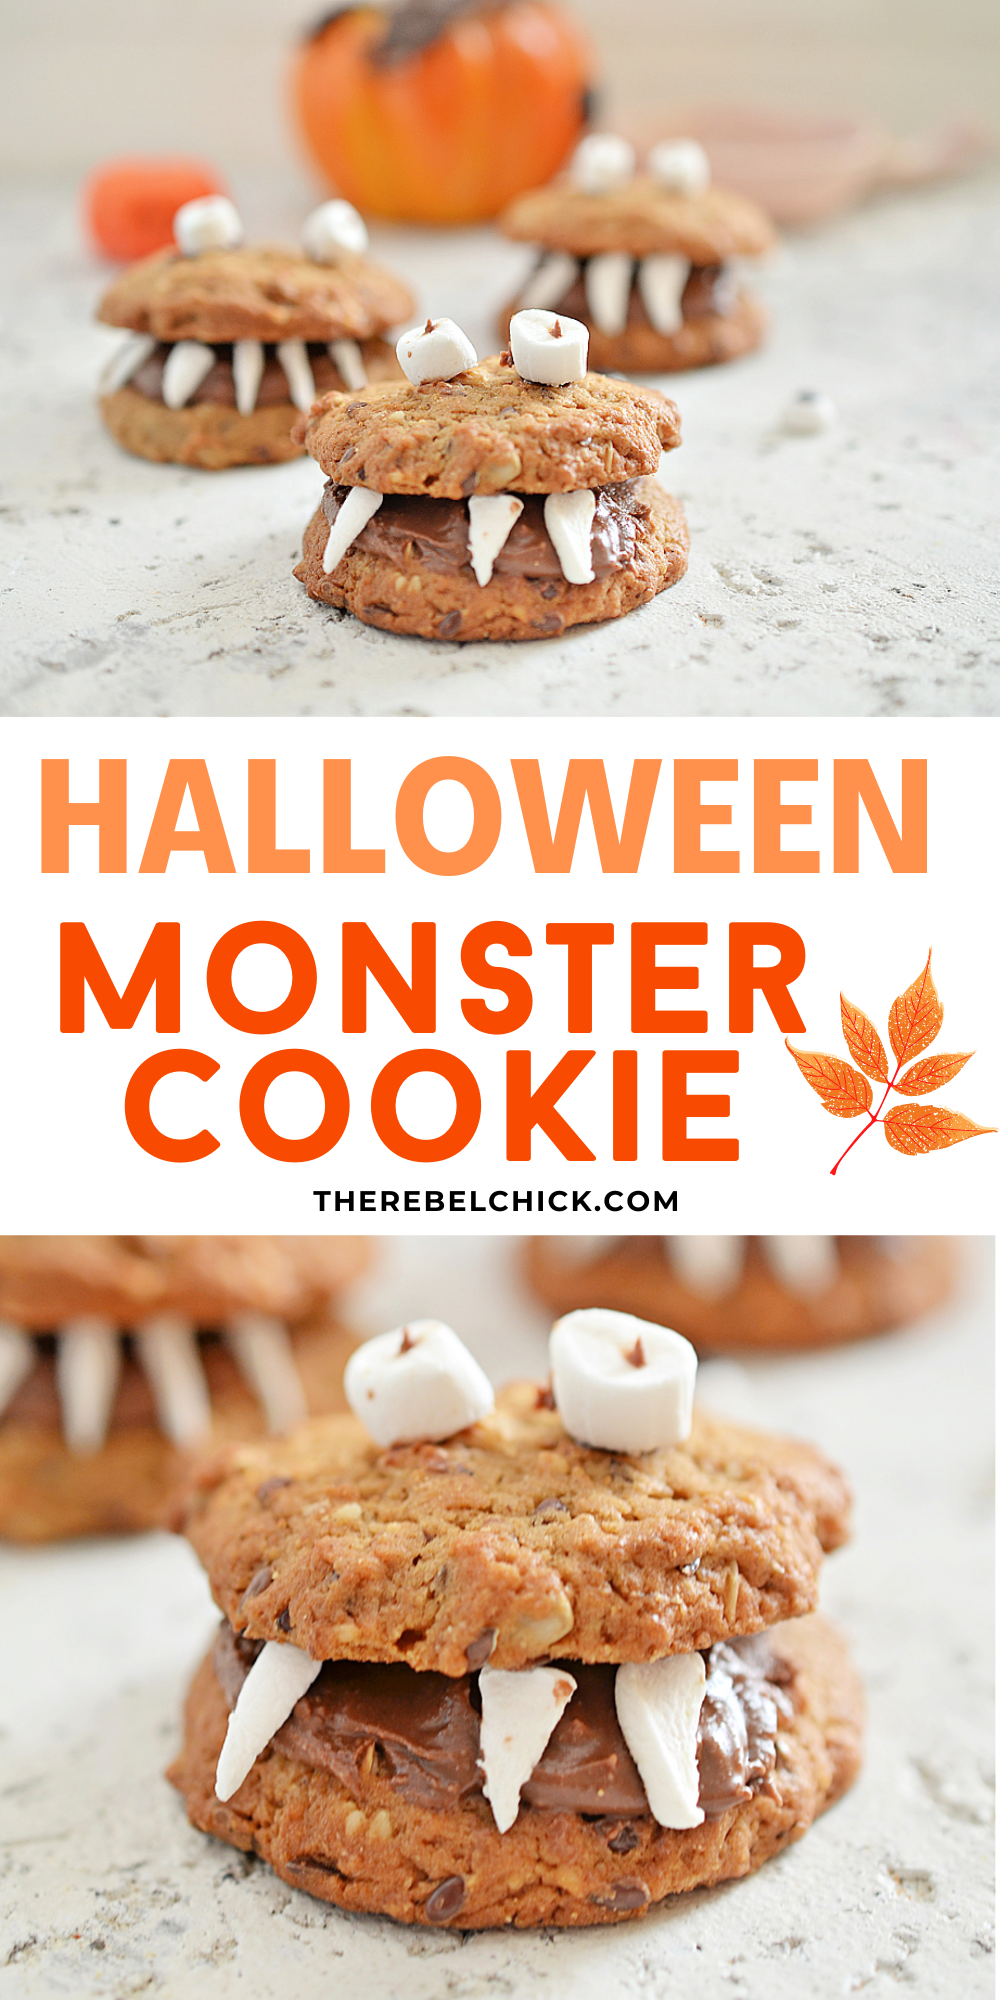 Halloween monster cookie